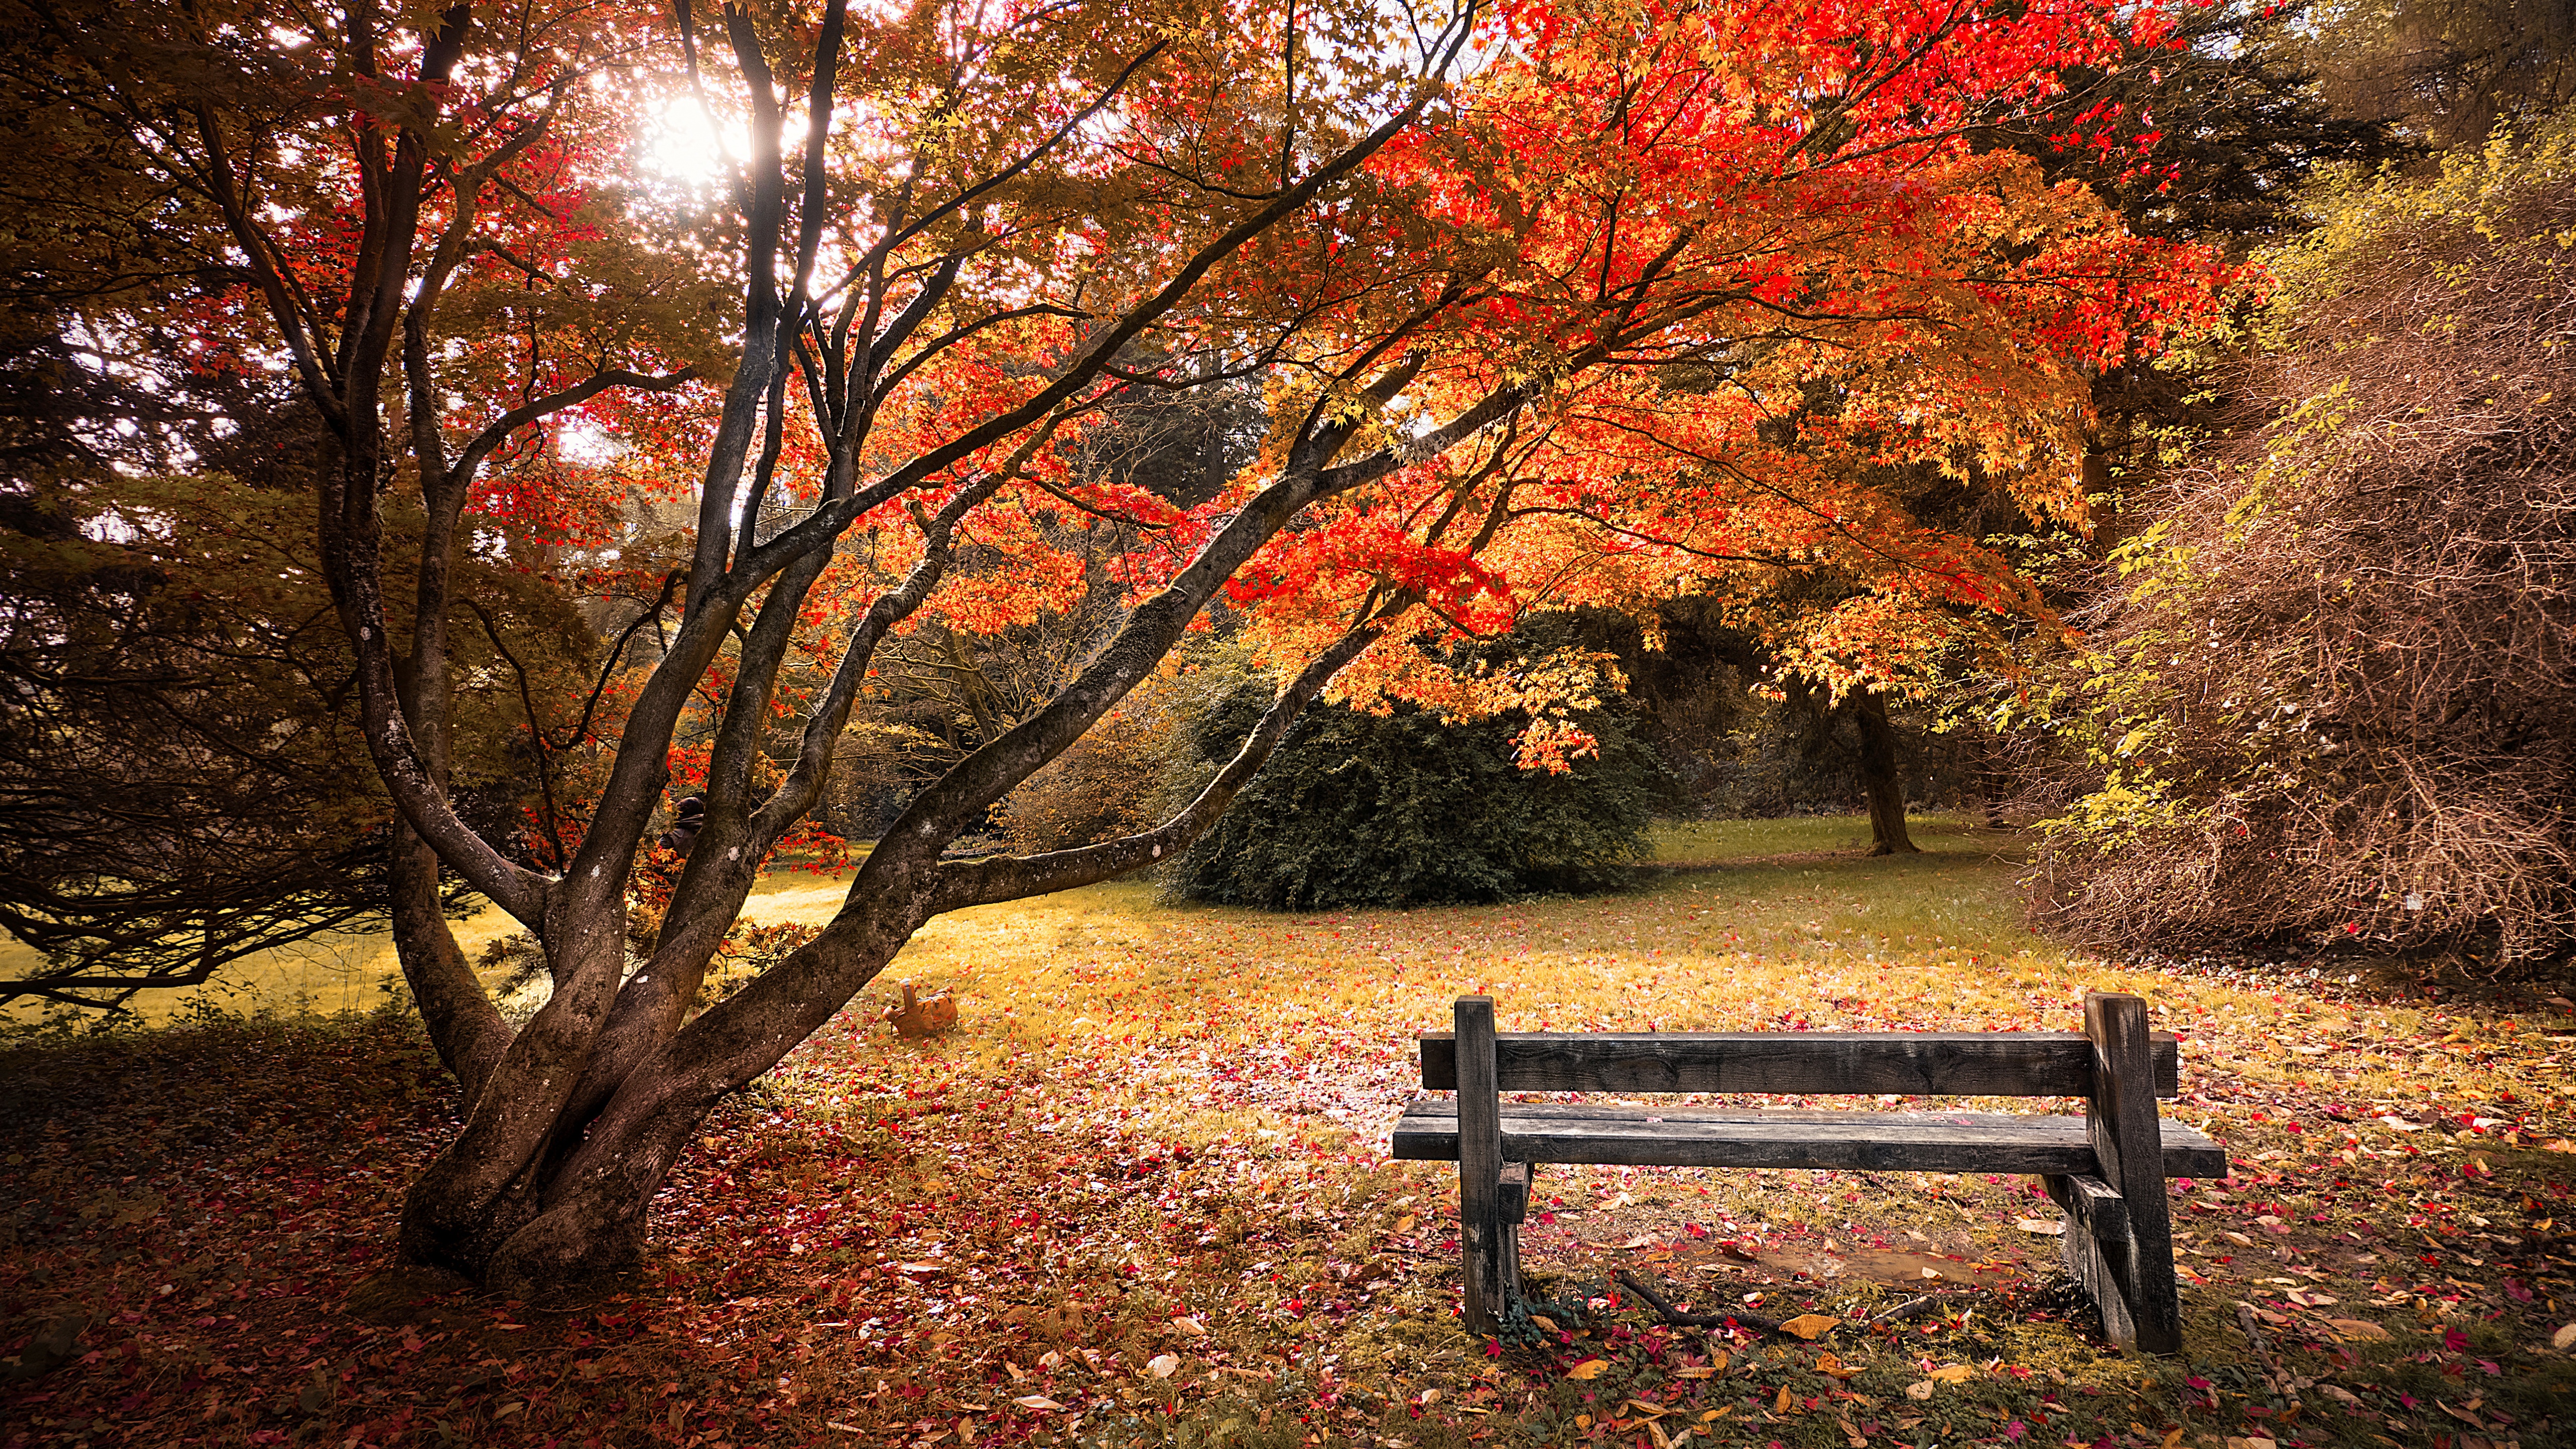 Fall scenes. Картинки на рабочий стол осень. Фото осень на рабочий стол на весь экран. Осень деревья. Красивые пейзажи с осенними кленами.